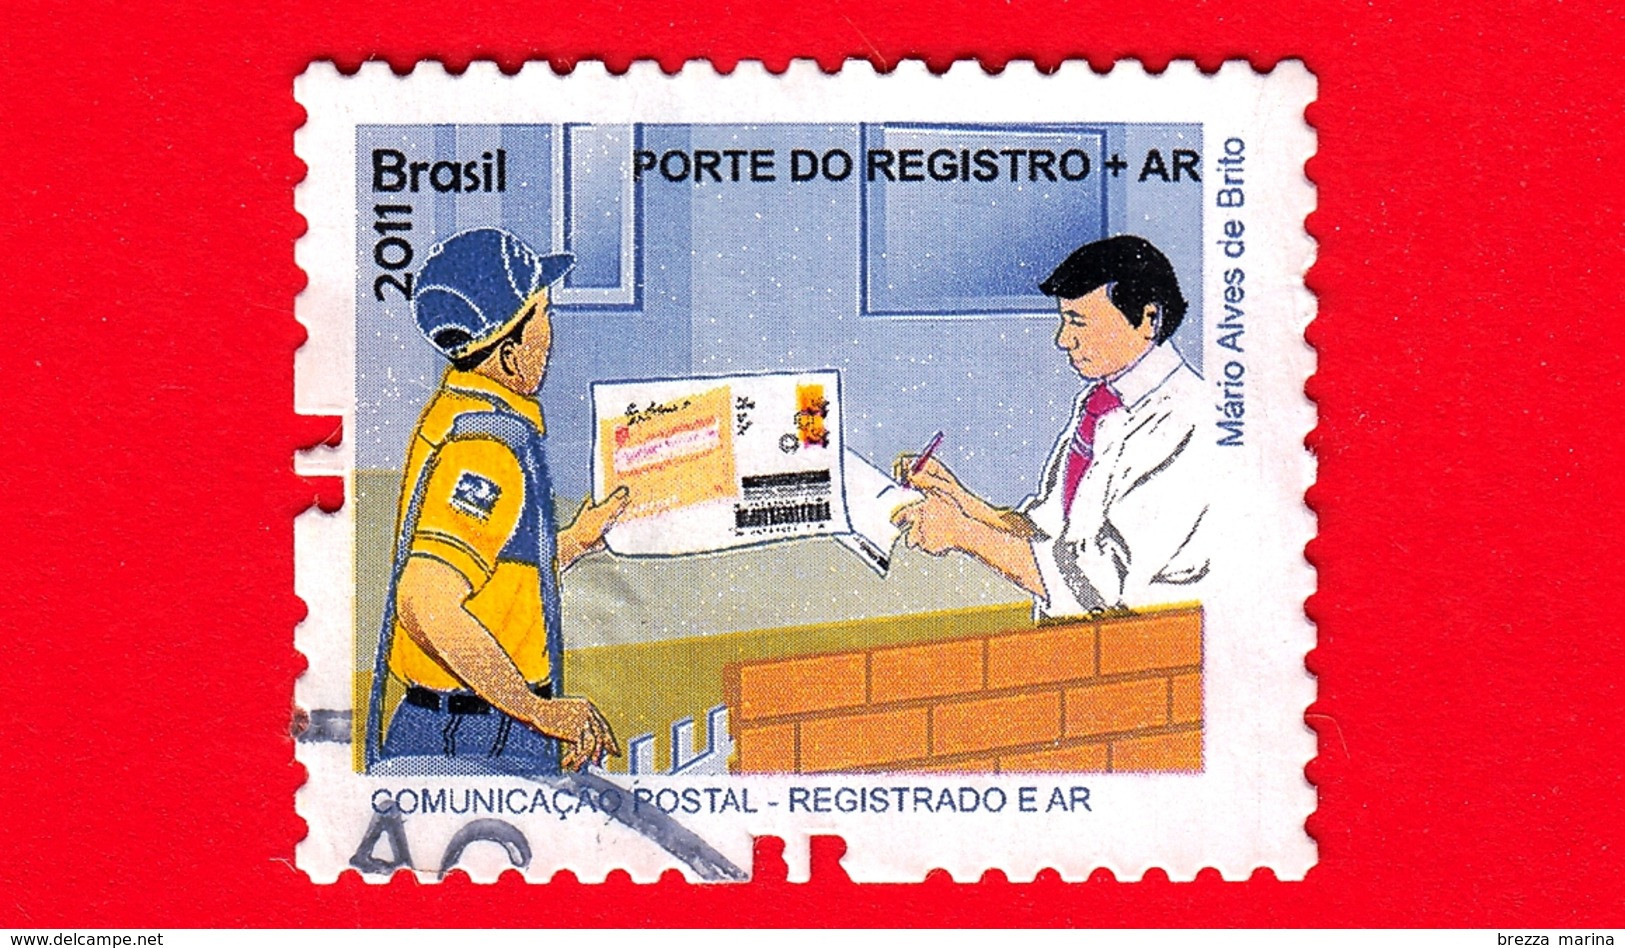 BRASILE - Usato - 2011 - Prodotti E Servizi Postali - Post Office - Porte Do Registro + AR - No Valore Facciale - Used Stamps